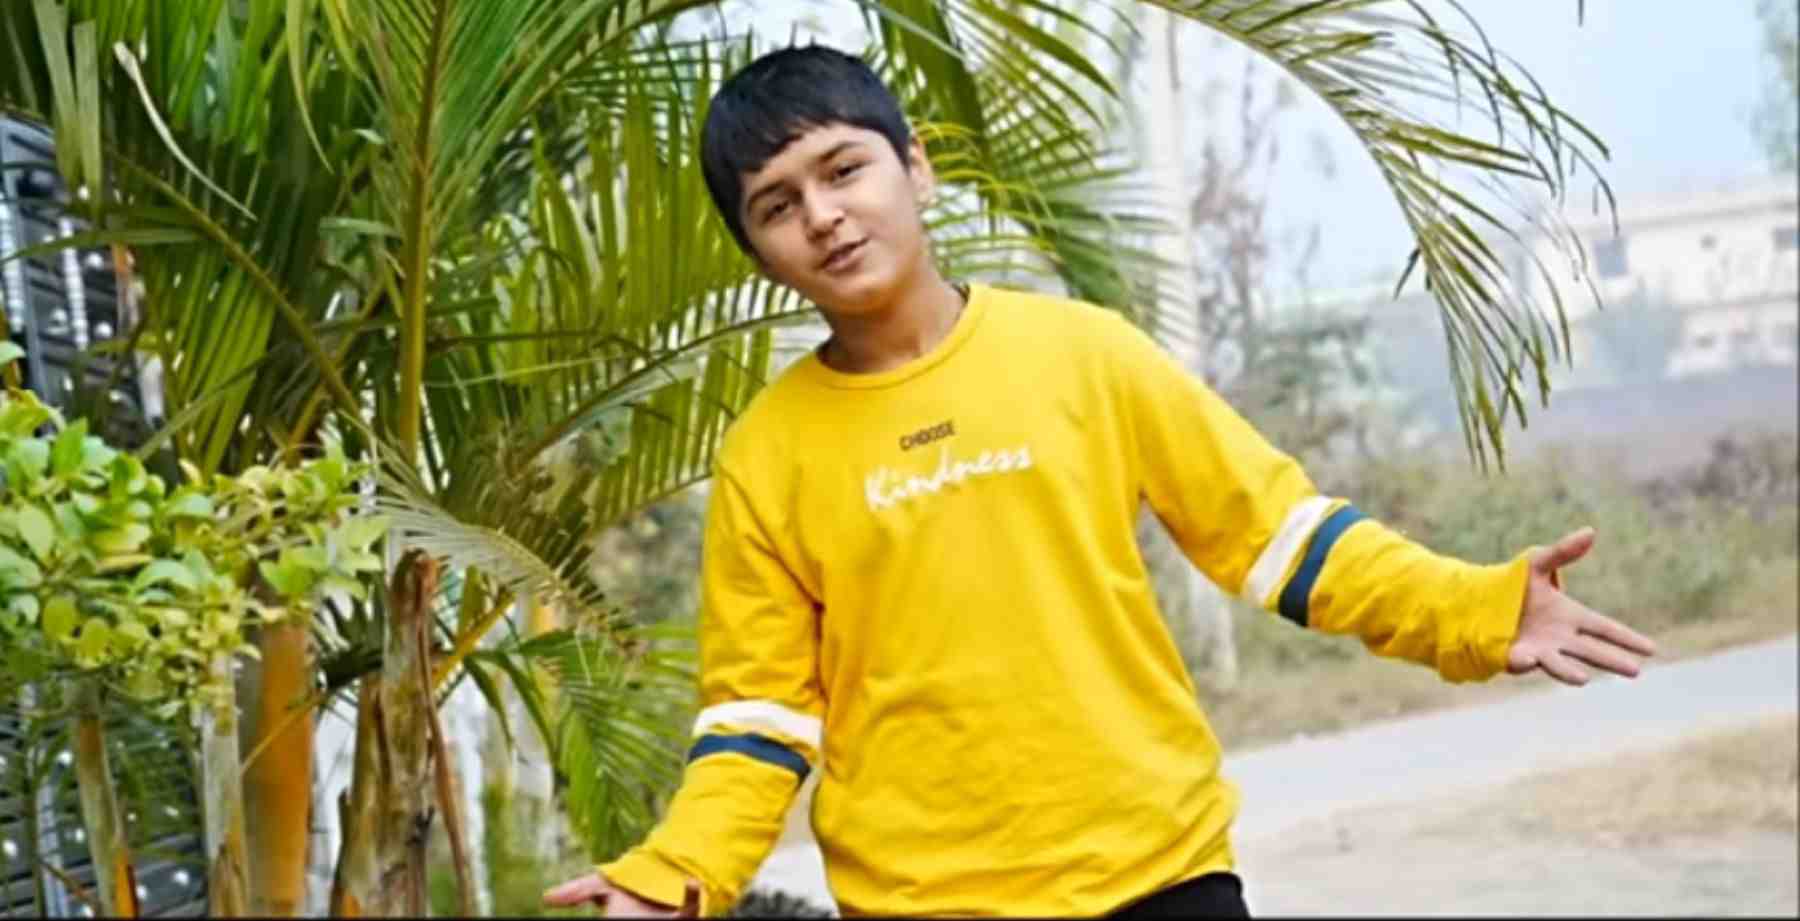 Uttarakhand pahari Gallery: Child singer Daksh Karki new song 'Uttarayani Agee' released. Daksh Karki new song